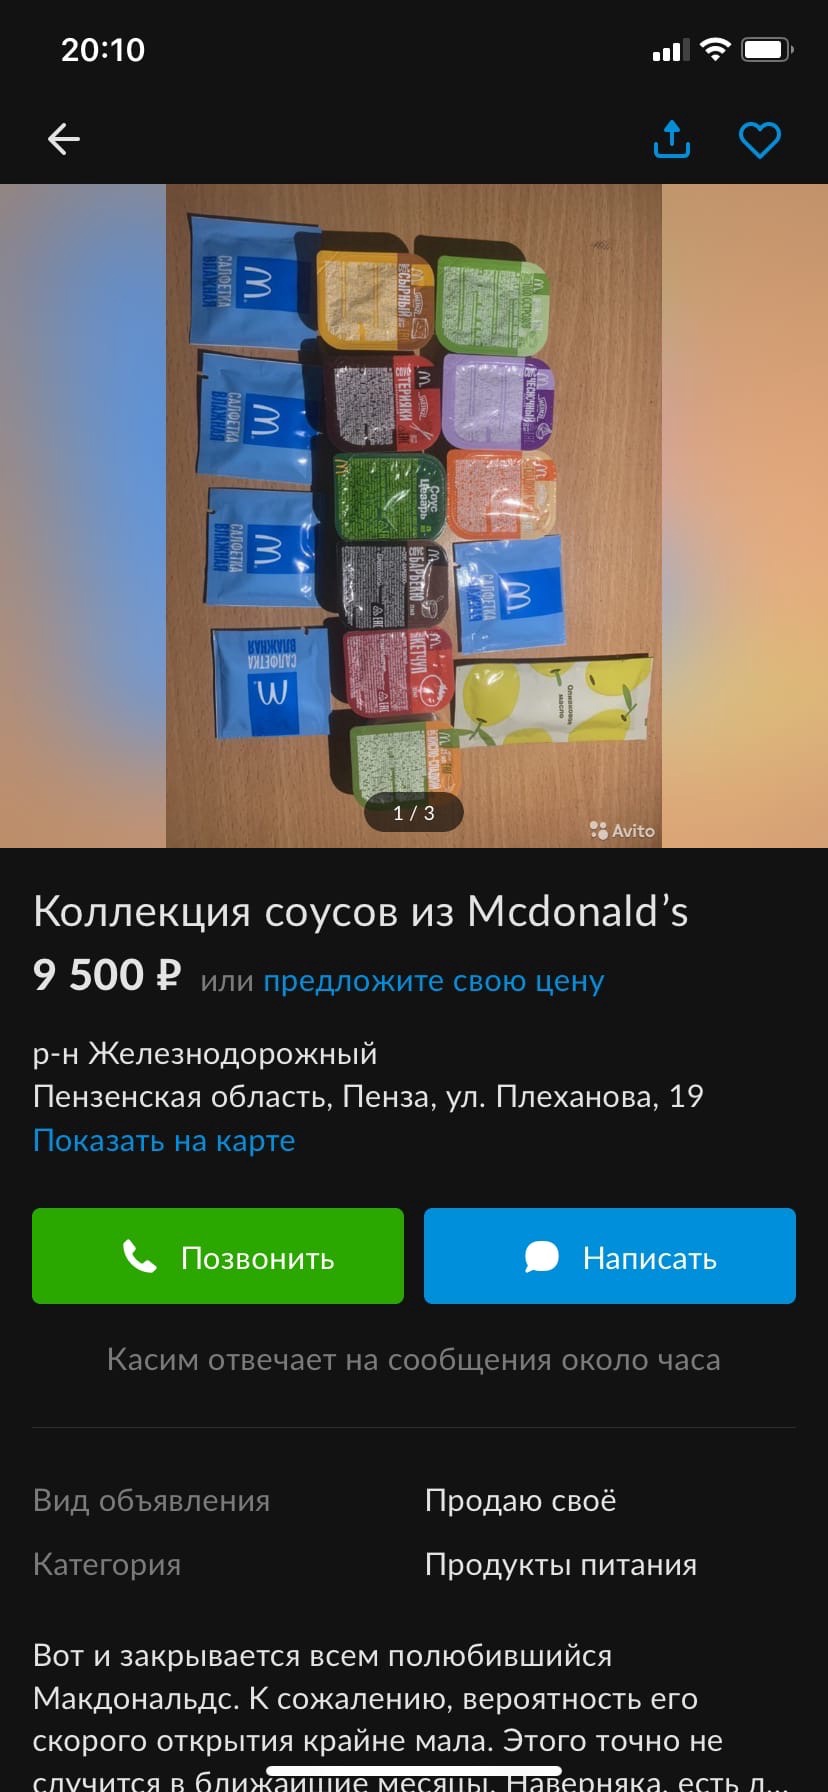 Пензенец просит за соусы из ресторана "Макдональдс"  9 тысяч рублей